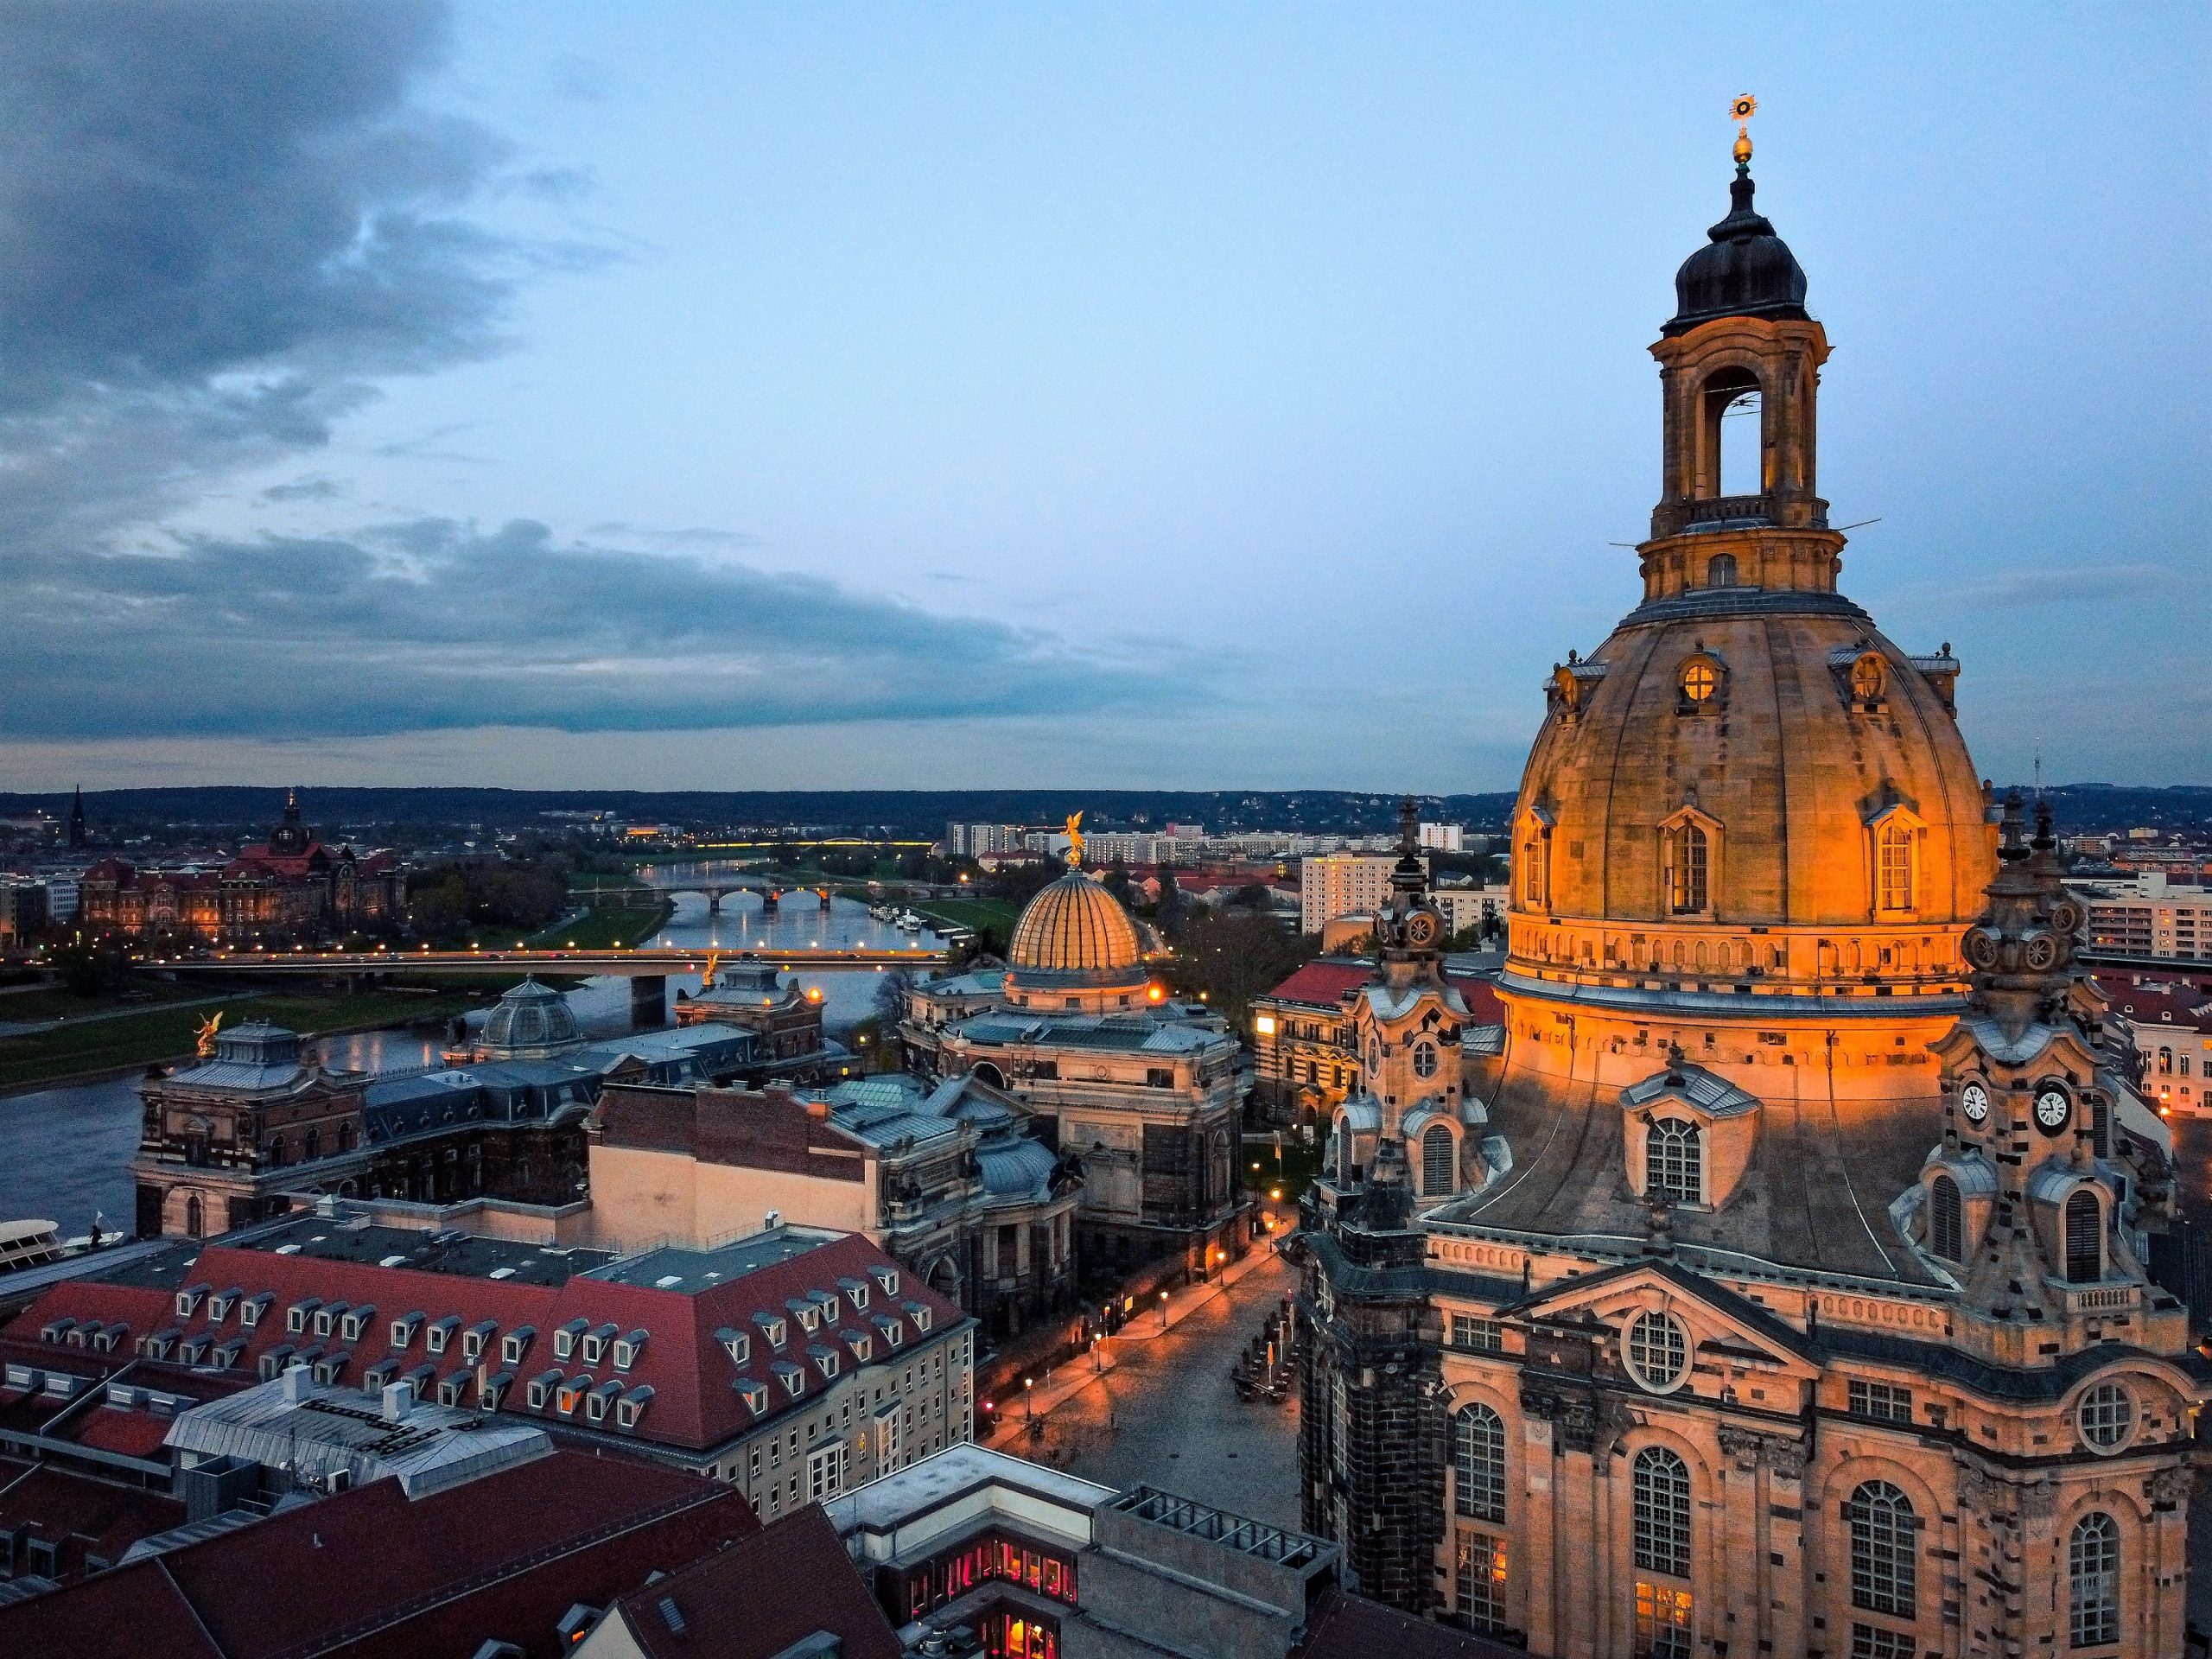 Die Frauenkirche in Dresden in der Abenddämmerung - #AltesBlechAlteGrenze